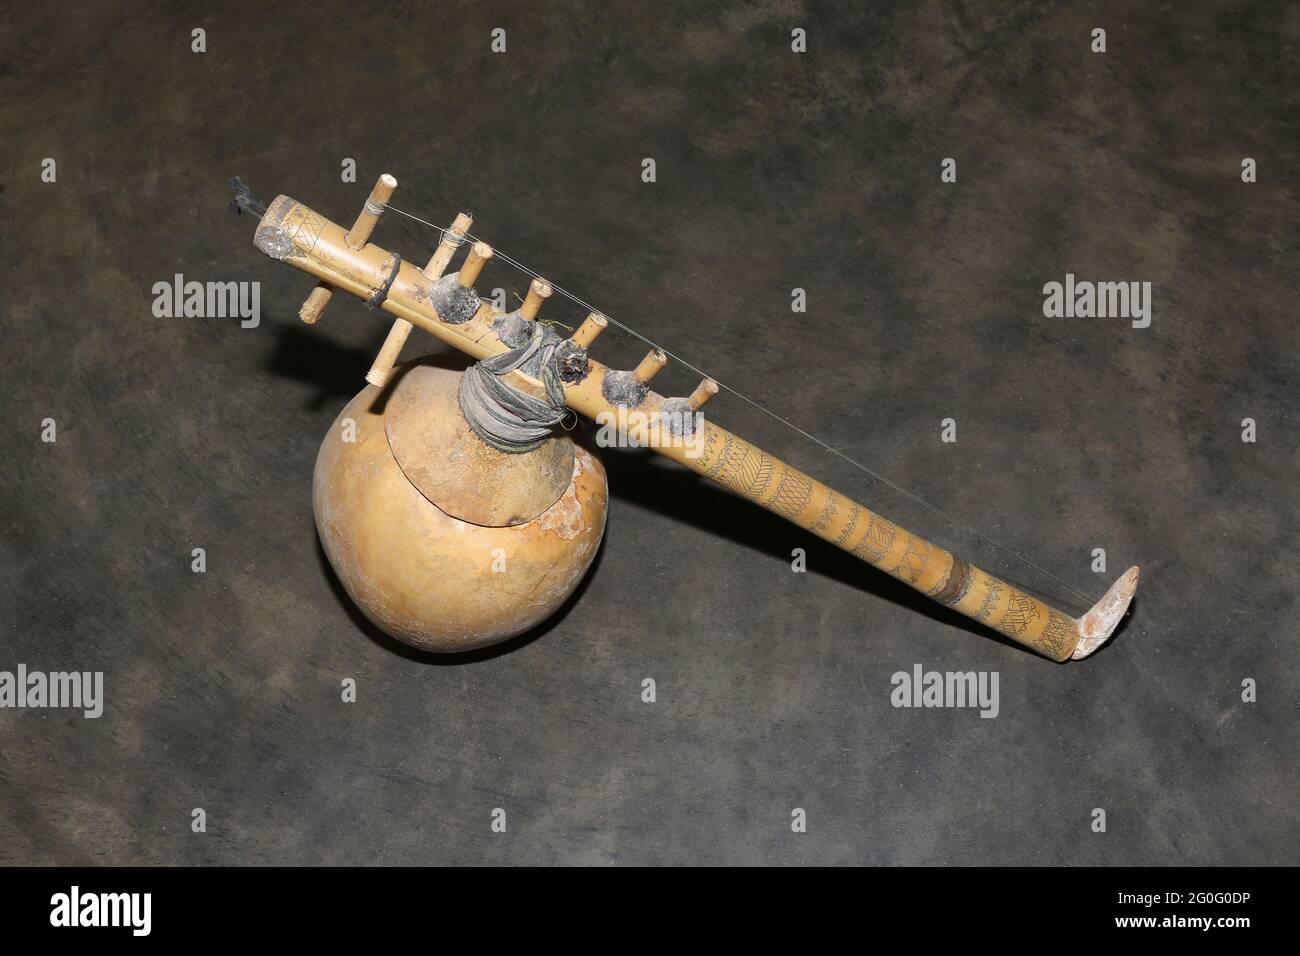 LANJIA SAORA STAMM. Traditionelles handgemachtes Musikinstrument. Saiteninstrument, bekannt als Geige aus Bambusstämmen und Kürbis. Gespielt durch einen Bogen laufen Stockfoto